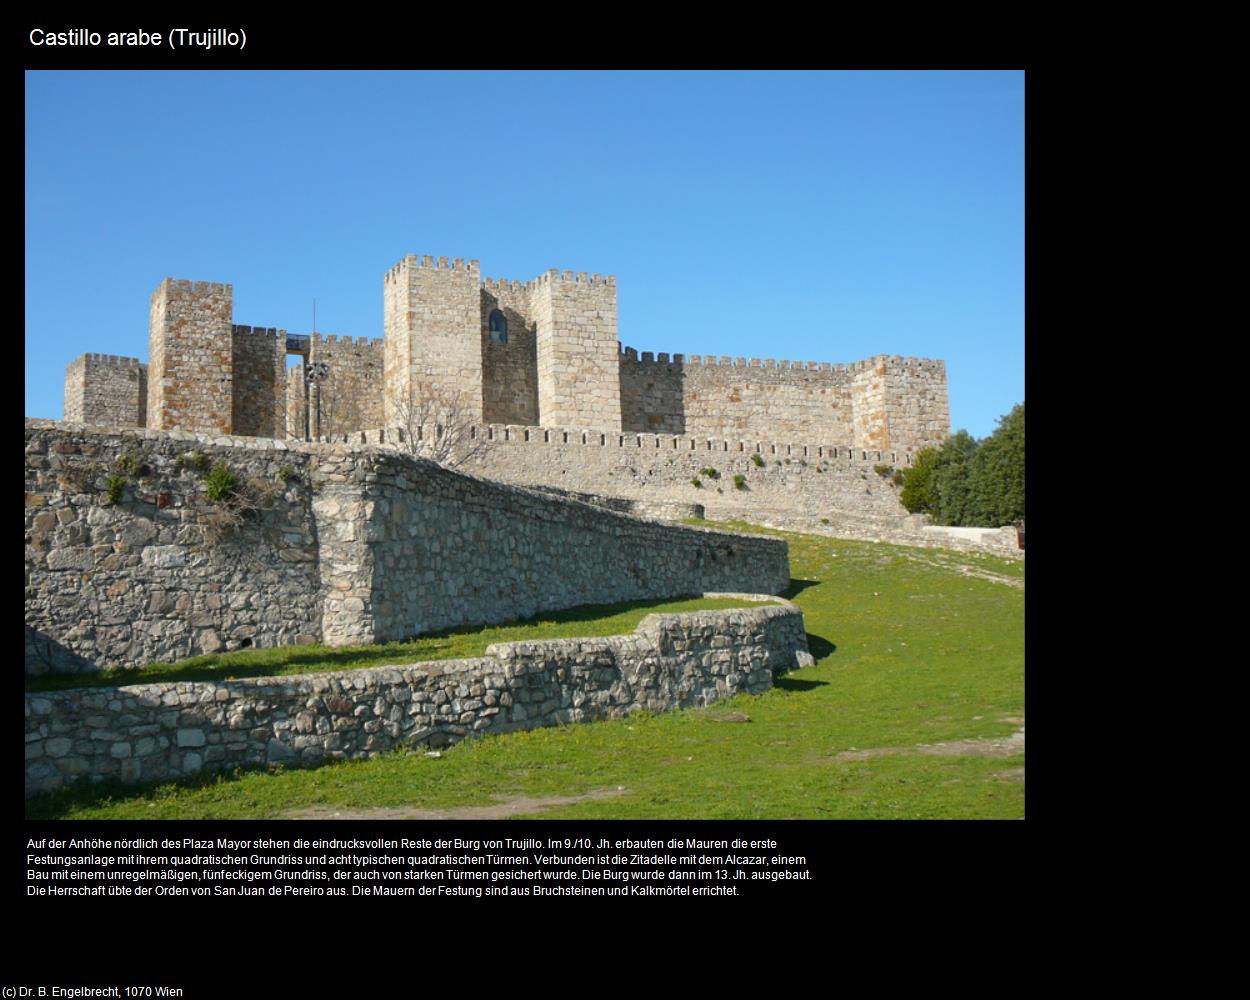 Castillo arabe (Trujillo) in EXTREMADURA